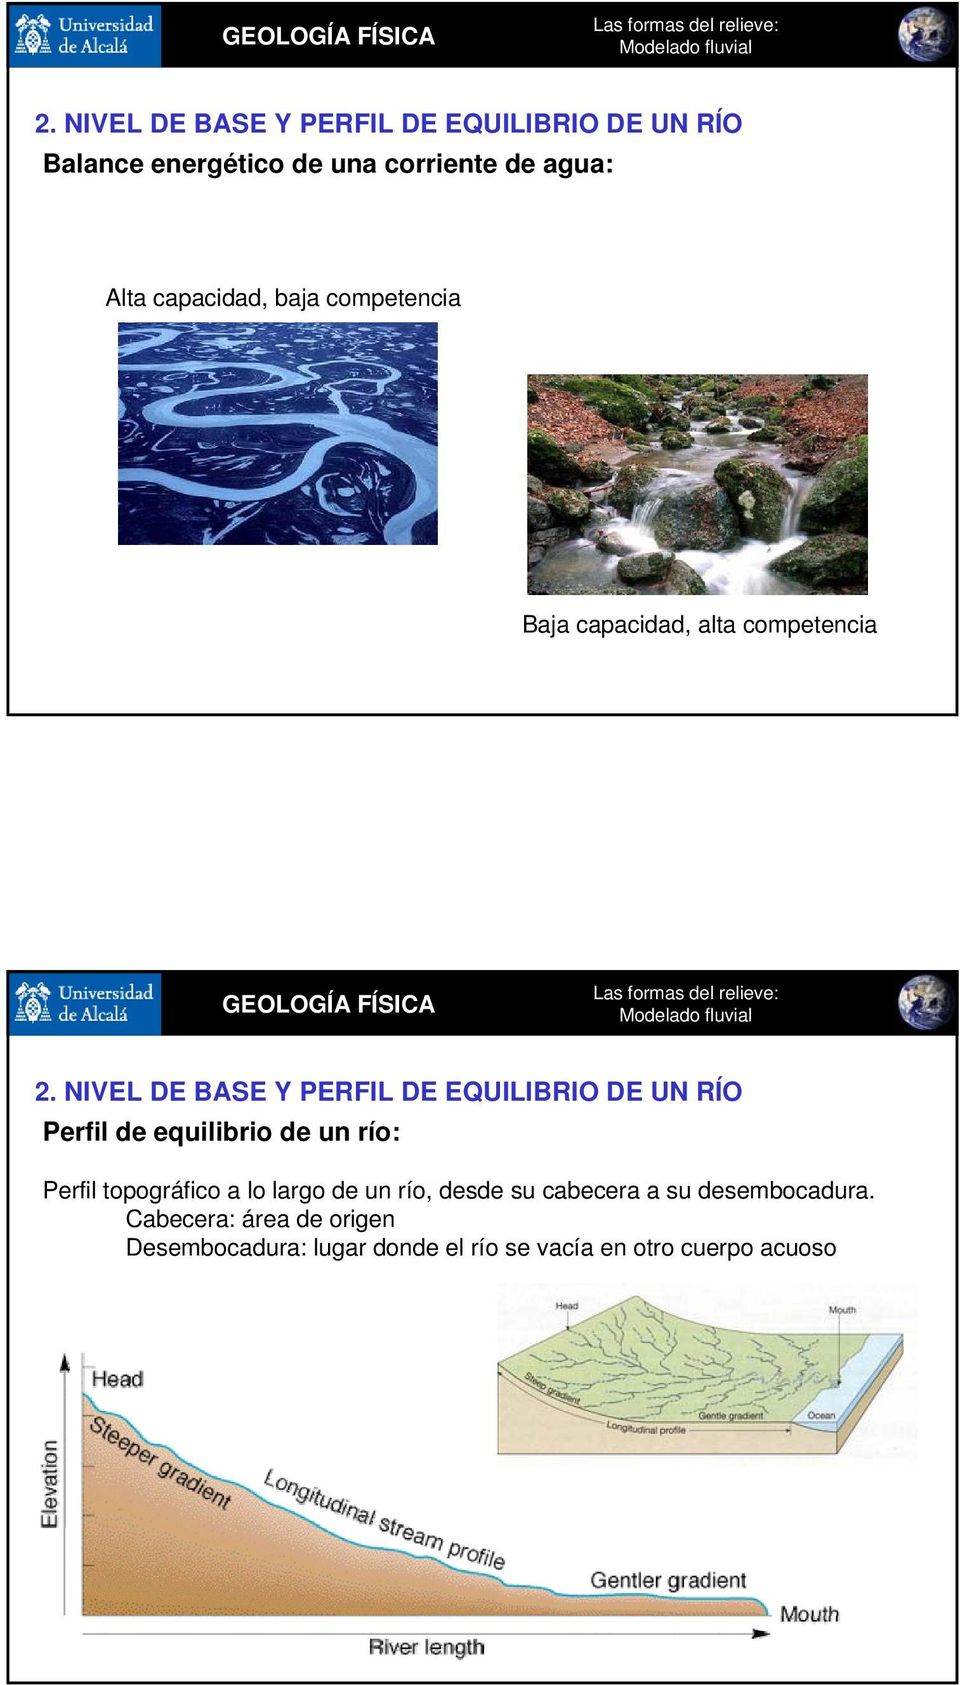 NIVEL DE BASE Y PERFIL DE EQUILIBRIO DE UN RÍO Perfil de equilibrio de un río: Perfil topográfico a lo